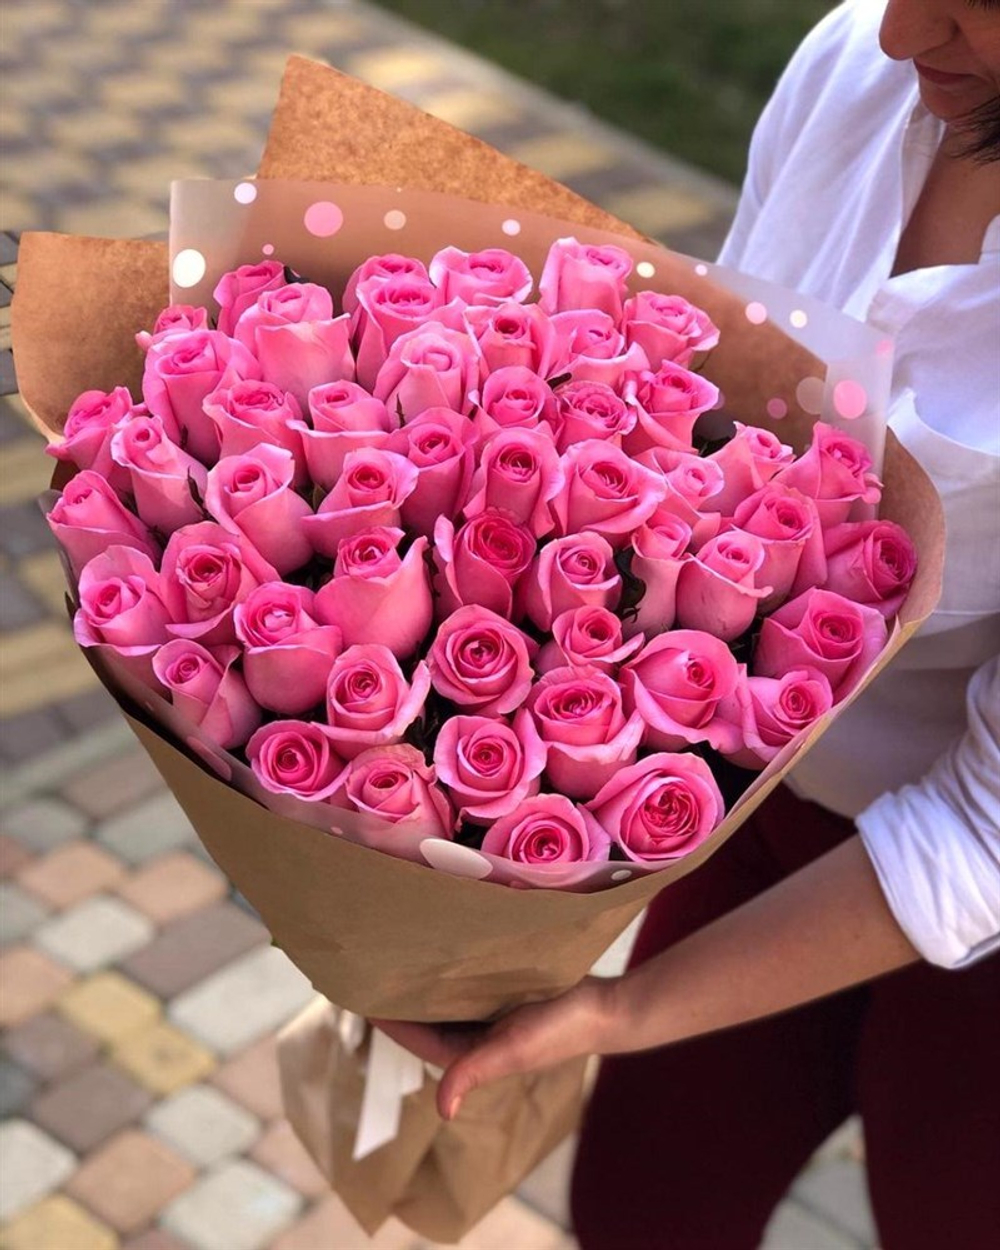 Букет из 51 розовой розы